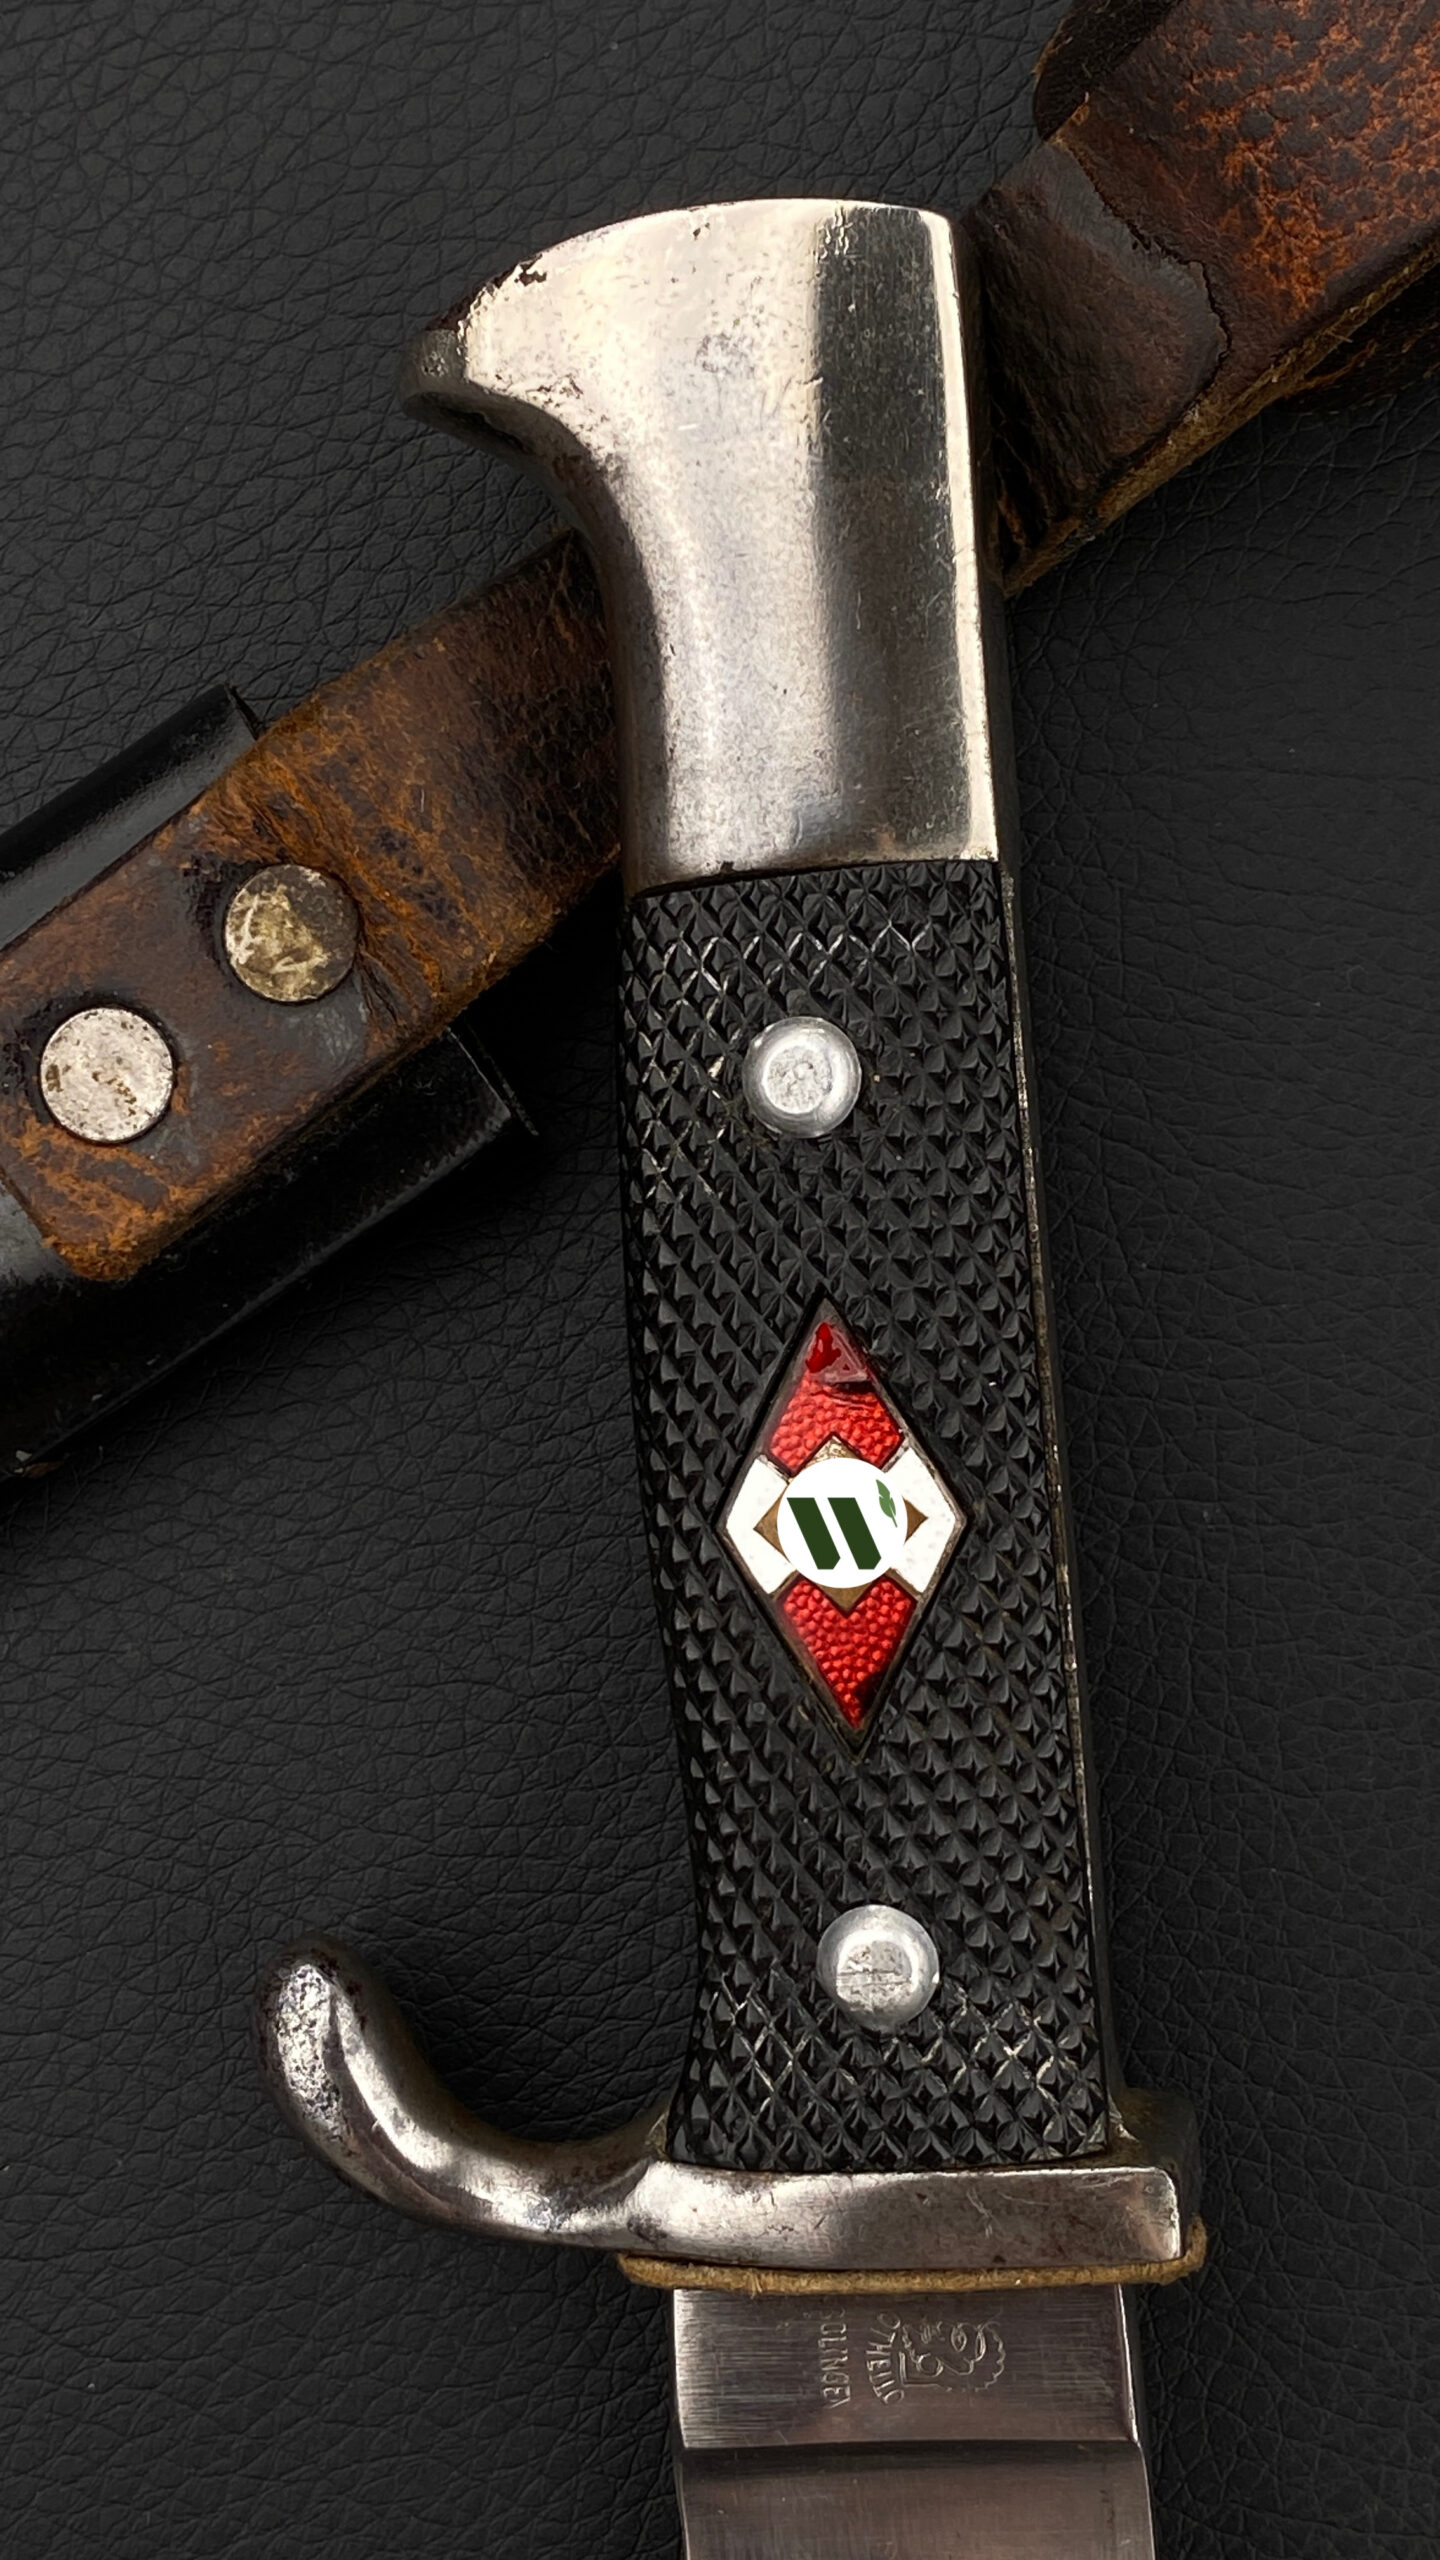 Нож членов молодёжной организации ГитлерЮгенд образца 1933 г. (клинок не оригинал)